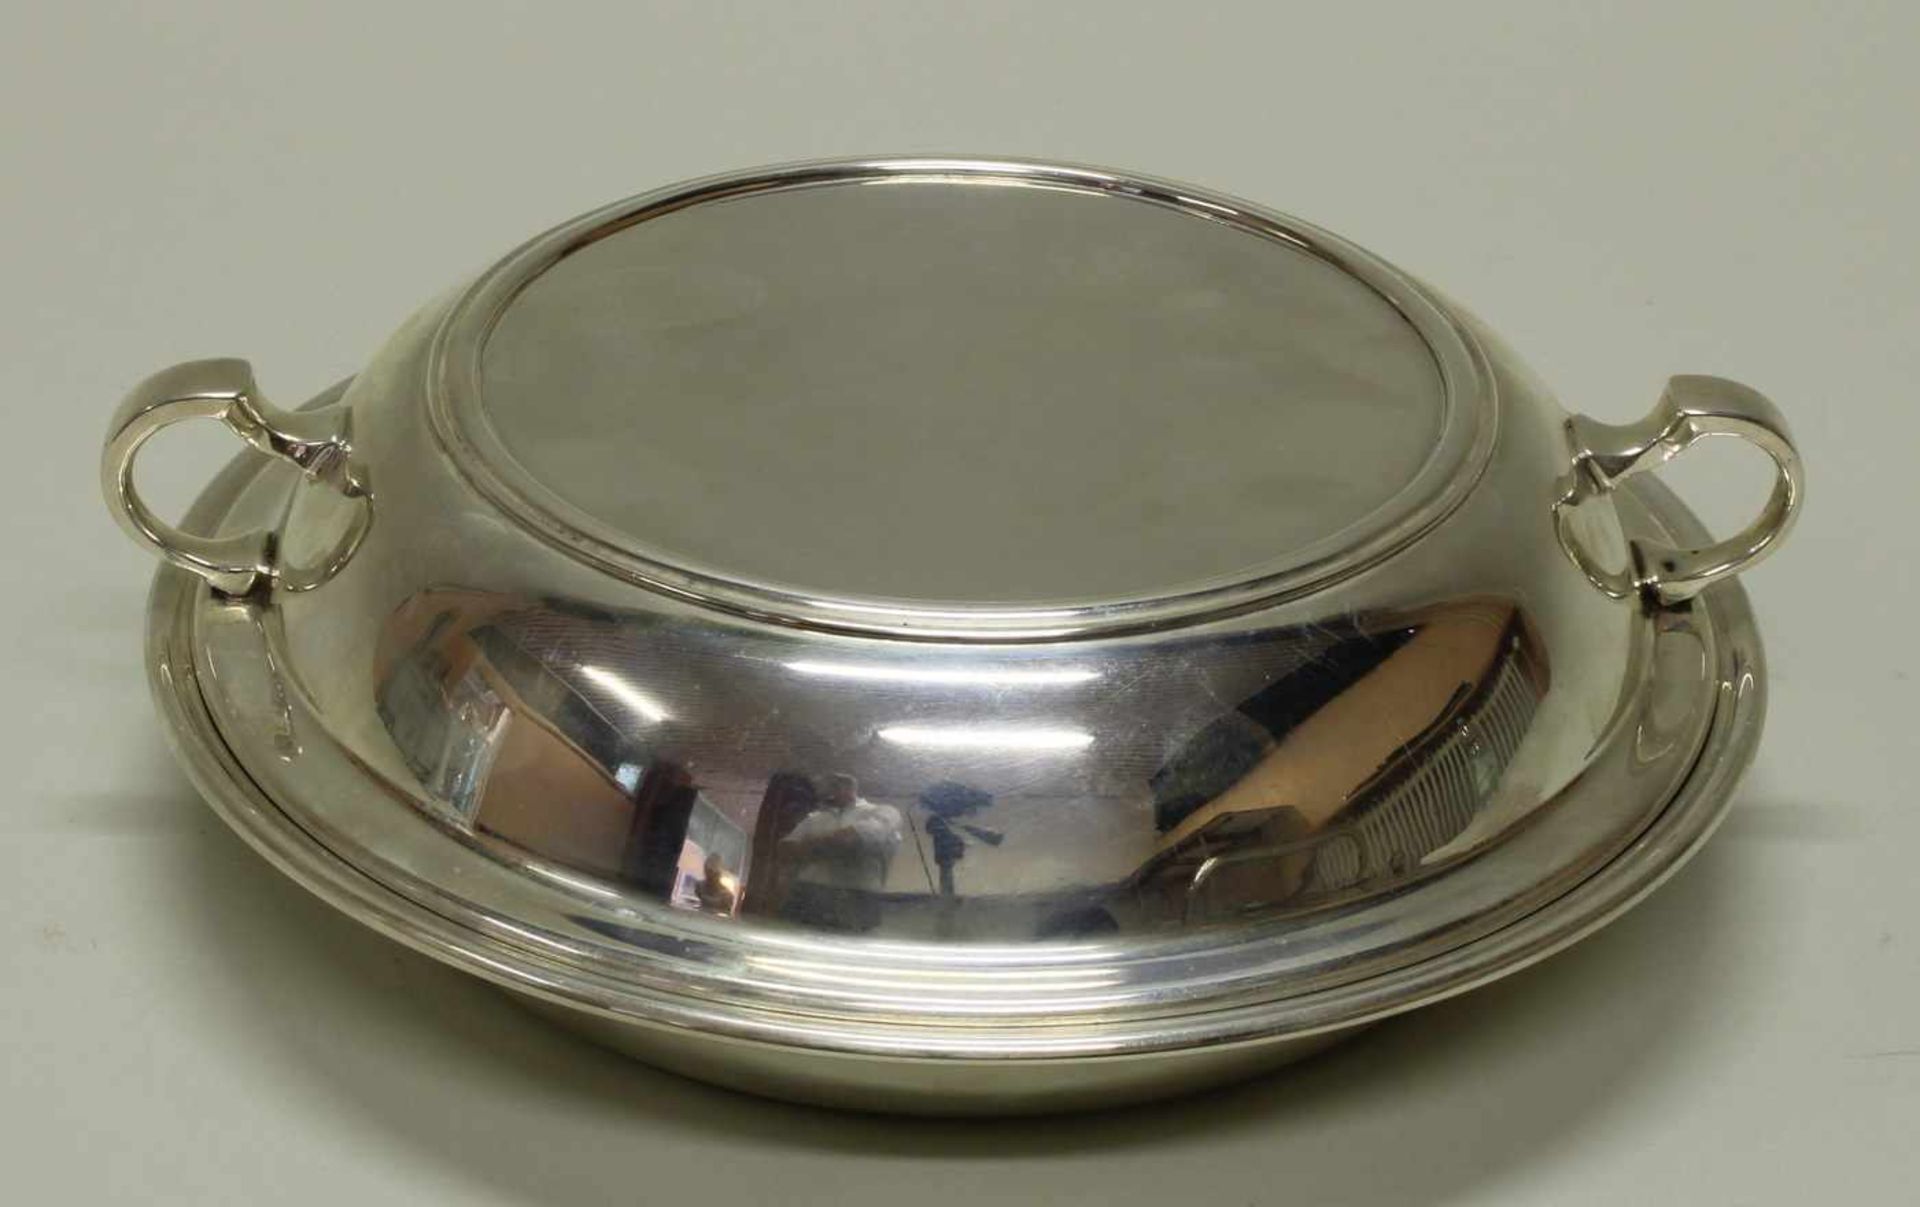 Warmhalteschale, Silber 925, rund, Deckel mit seitlichen Handhaben, 7.5 cm hoch, ø 22.5 cm, ca. - Image 2 of 2